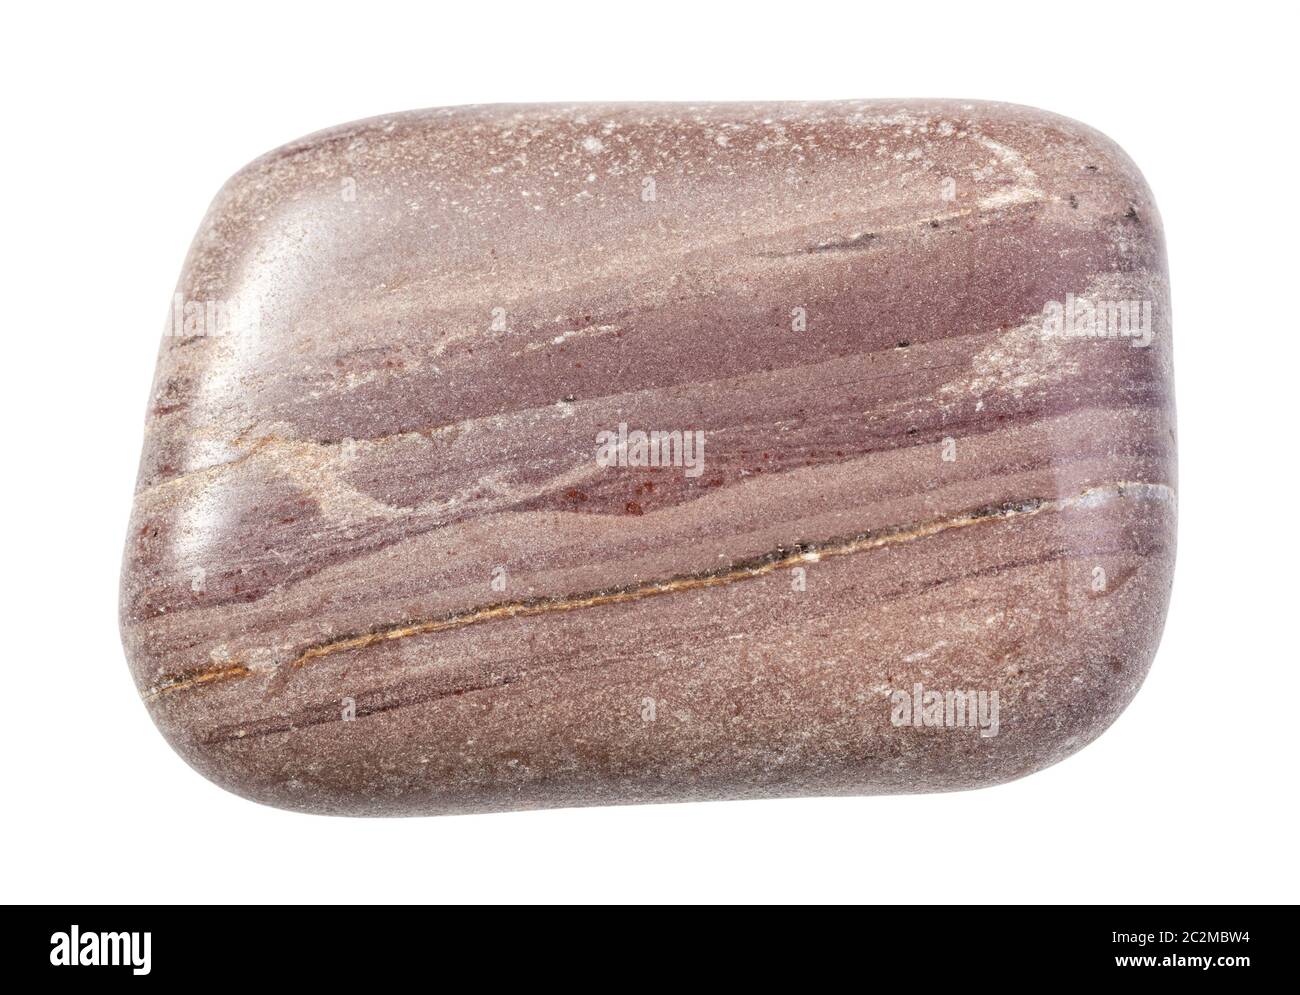 Primo piano di campione di minerale naturale proveniente dalla collezione geologica - roccia argillite lucidata isolata su sfondo bianco Foto Stock